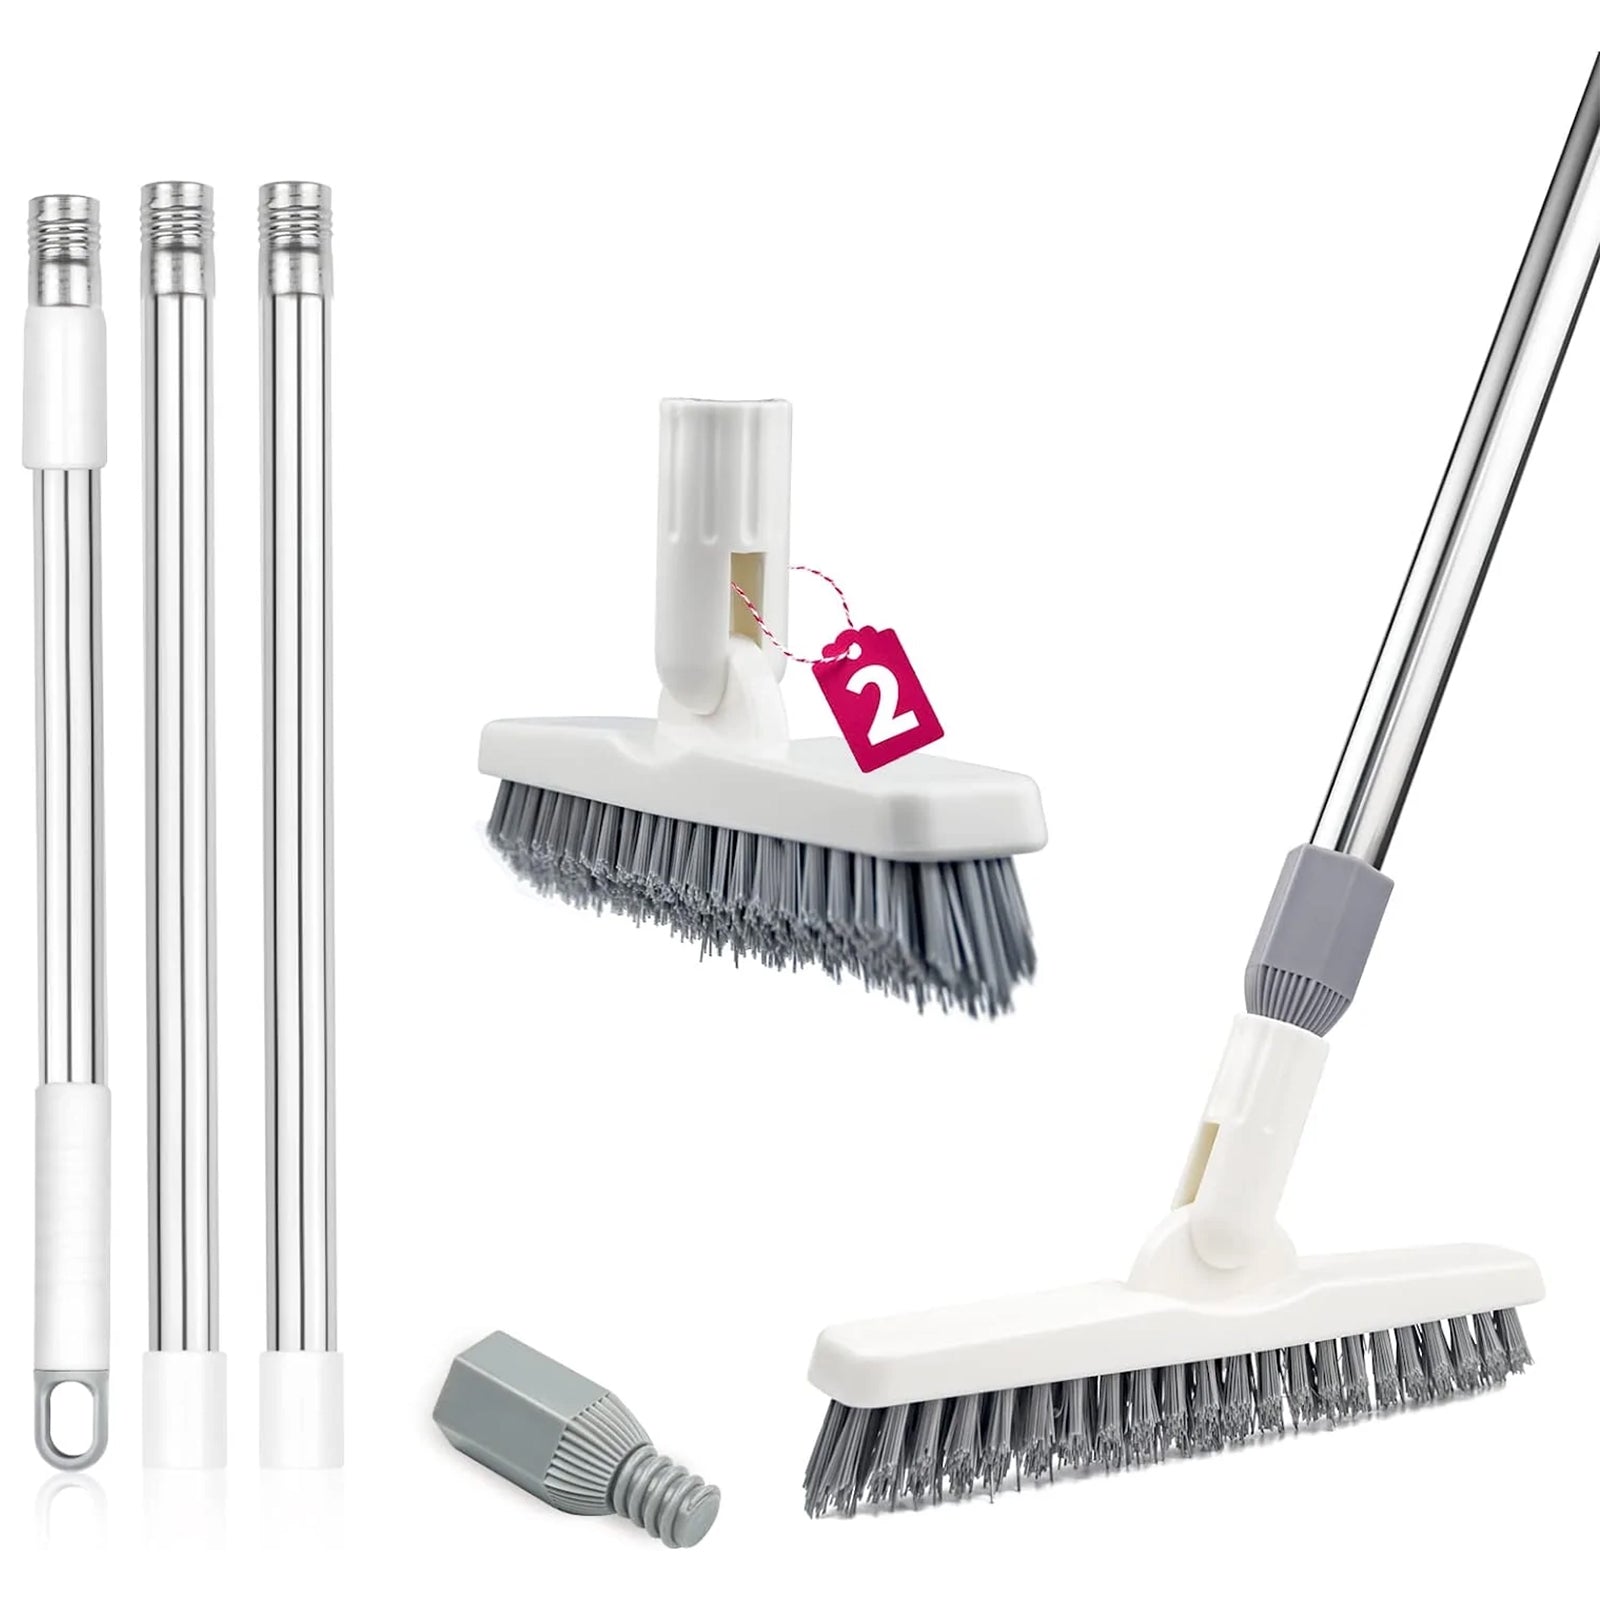 ITTAHO 3 Pack Dish Brush Set, Scrub Brush for Cleaning, Multi-Purpose